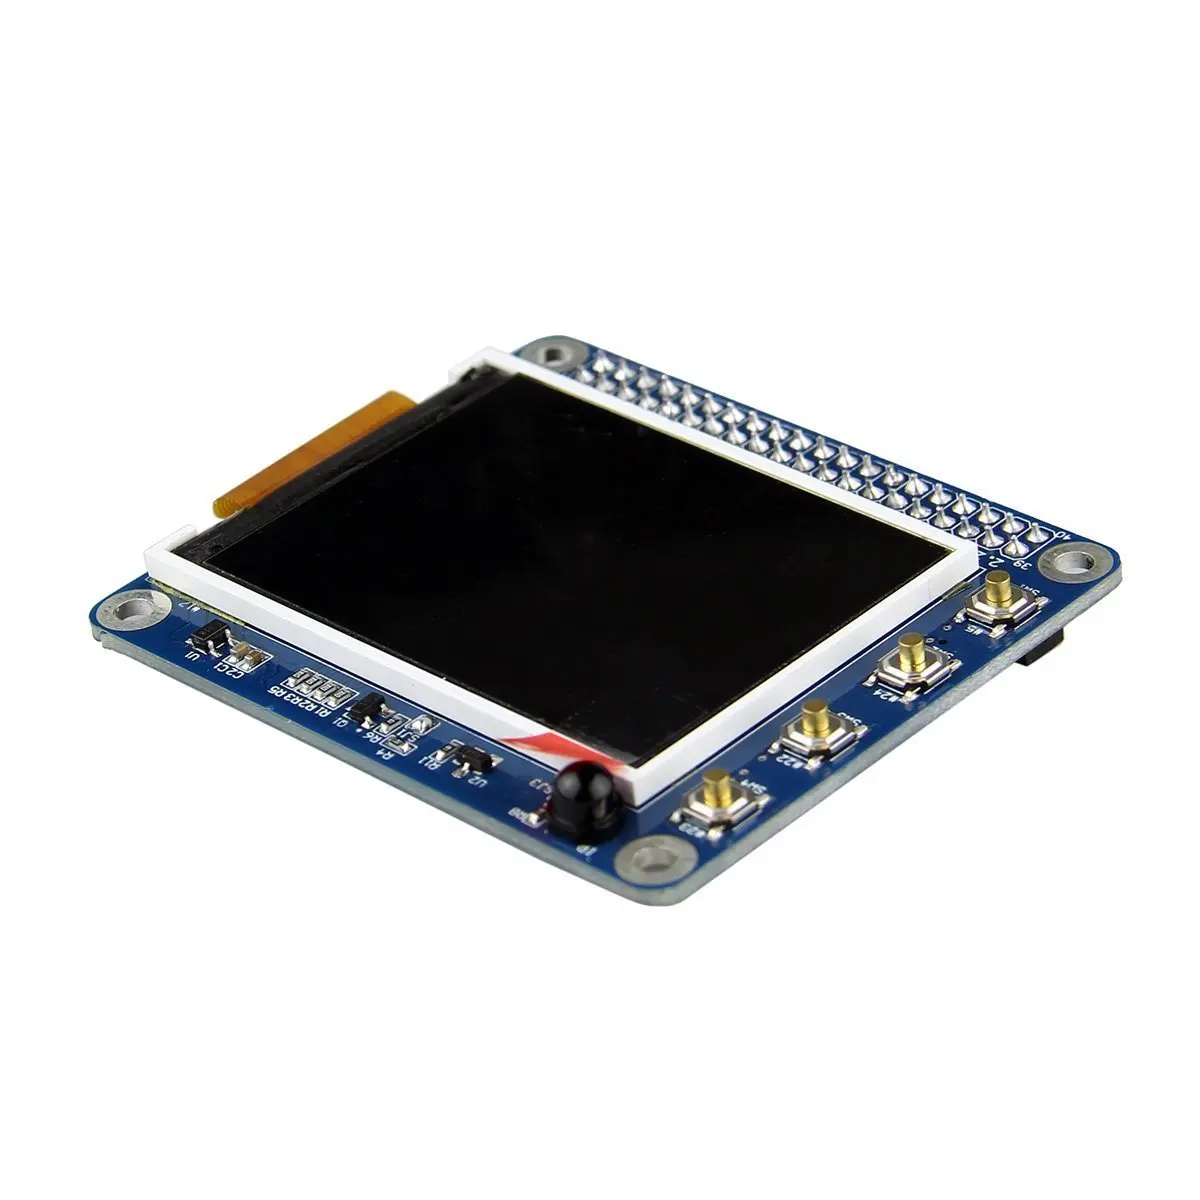 Топ предложения алюминиевый корпус Чехол комплект модель для Raspberry Pi 2 B/3 B DIY Kit с 2,2 дюймовым высоким PPI TFT ЖК-экраном Bluetooth